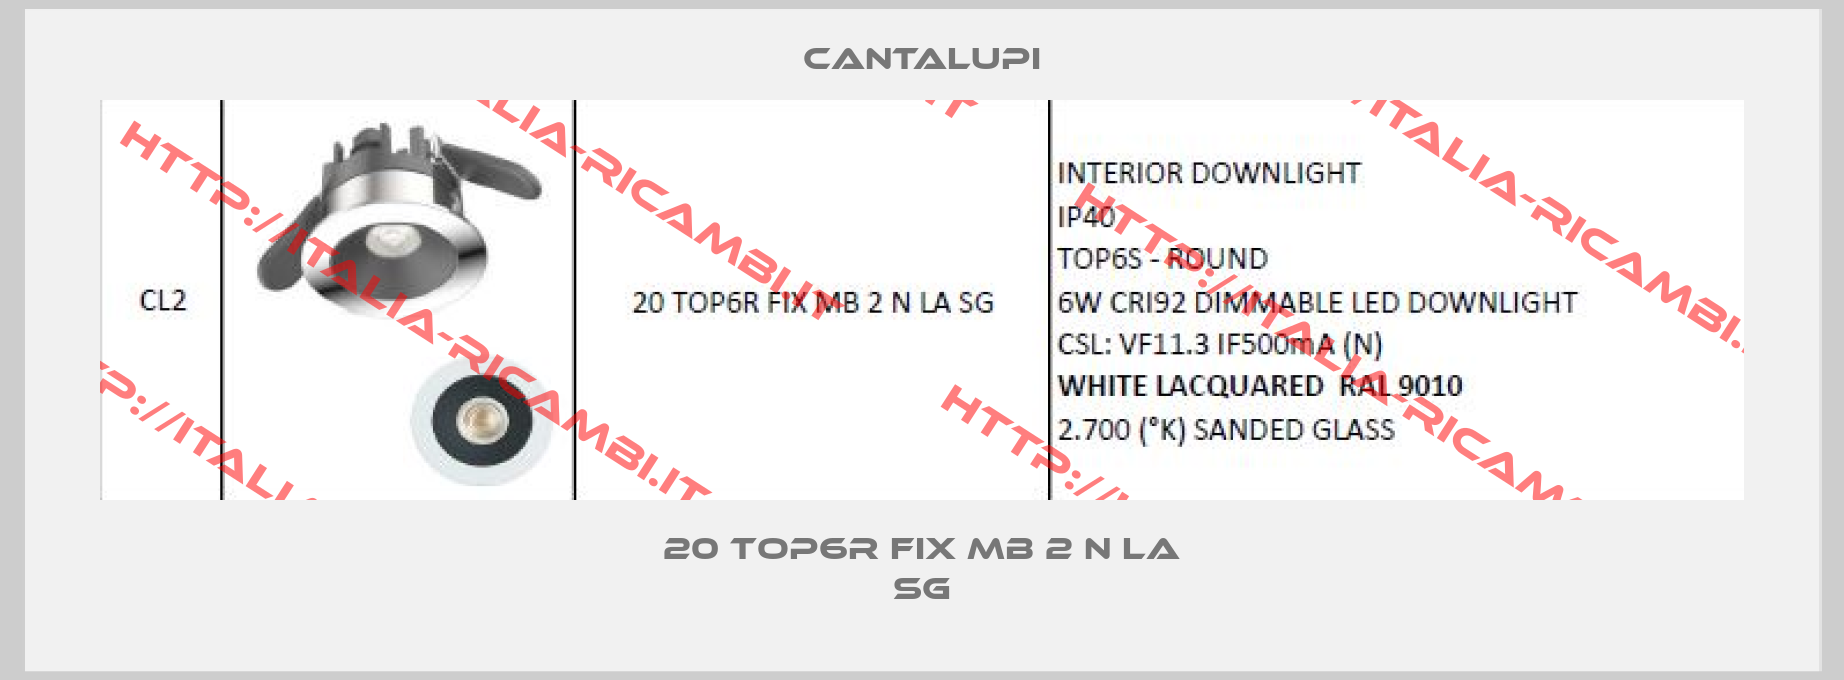 CANTALUPI-20 TOP6R FIX MB 2 N LA SG